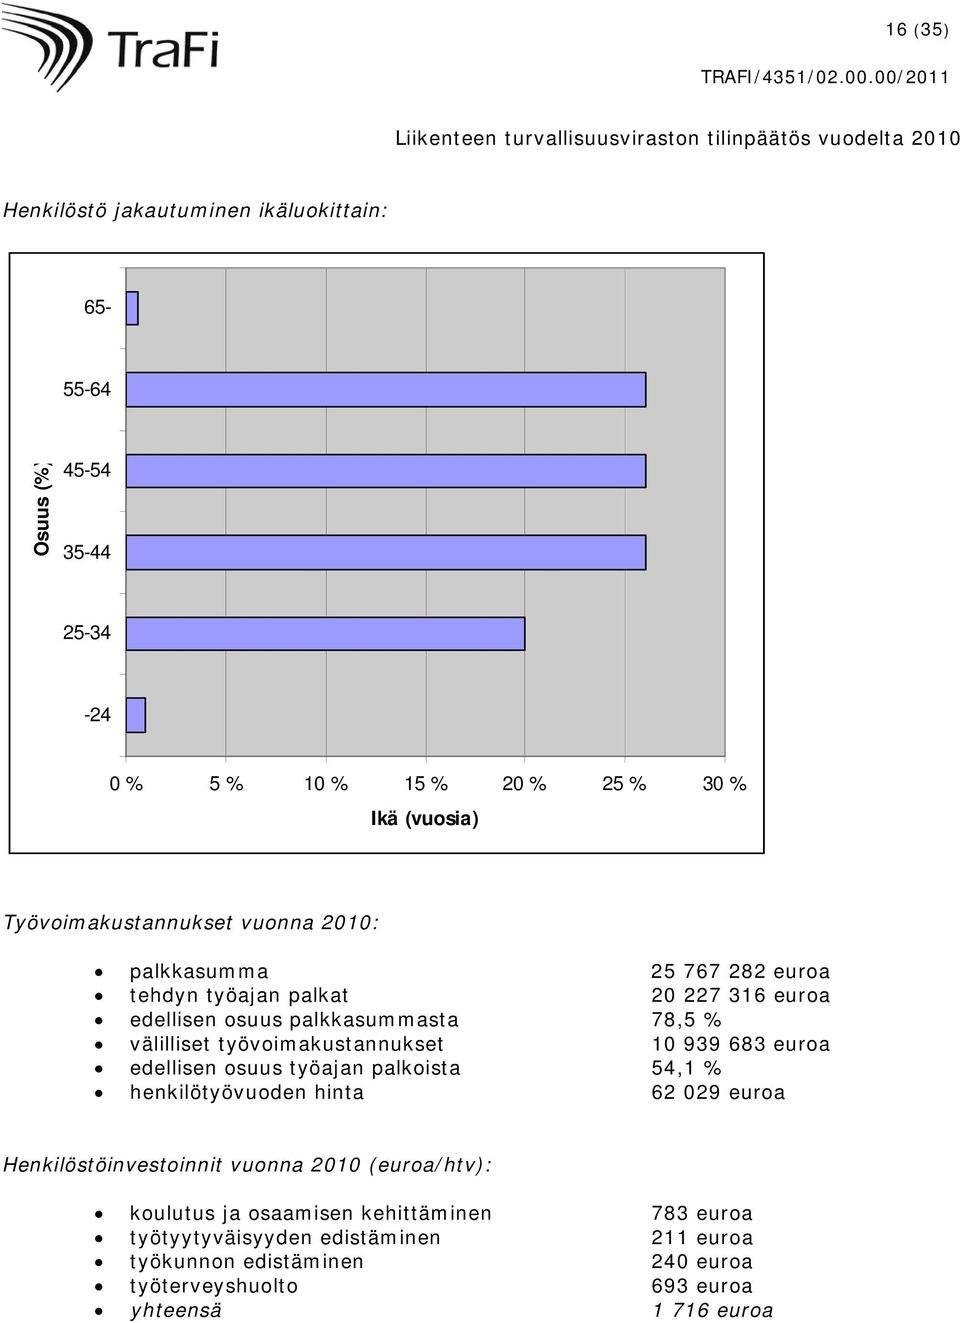 työvoimakustannukset 10 939 683 euroa edellisen osuus työajan palkoista 54,1 % henkilötyövuoden hinta 62 029 euroa Henkilöstöinvestoinnit vuonna 2010